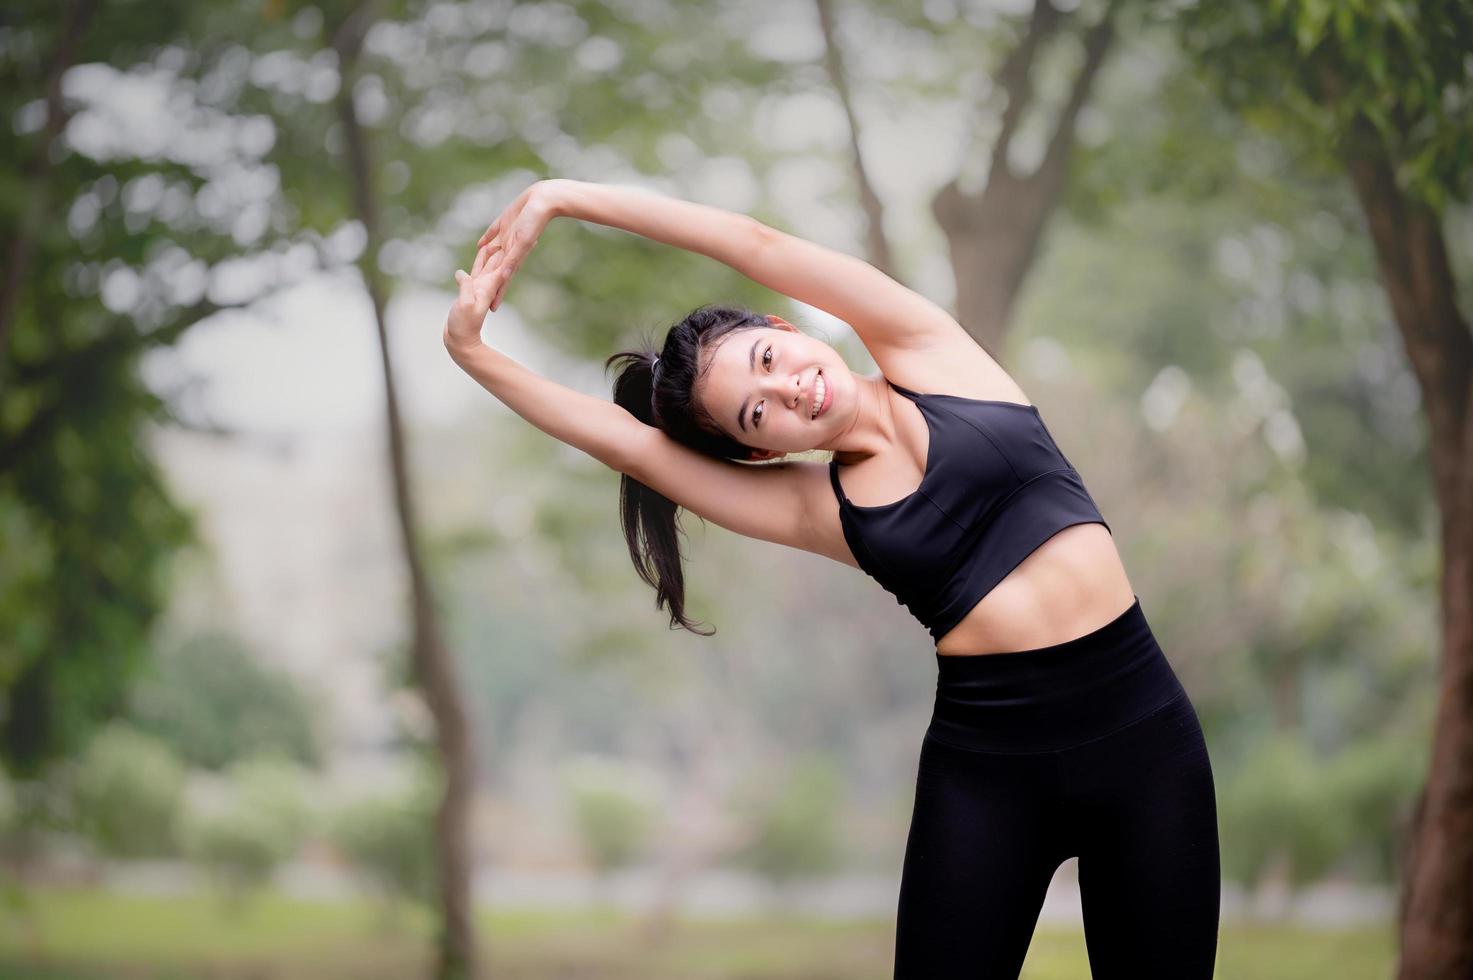 een mooie Aziatische vrouw is aan het opwarmen, om de spieren soepel te maken voordat ze gaat joggen foto